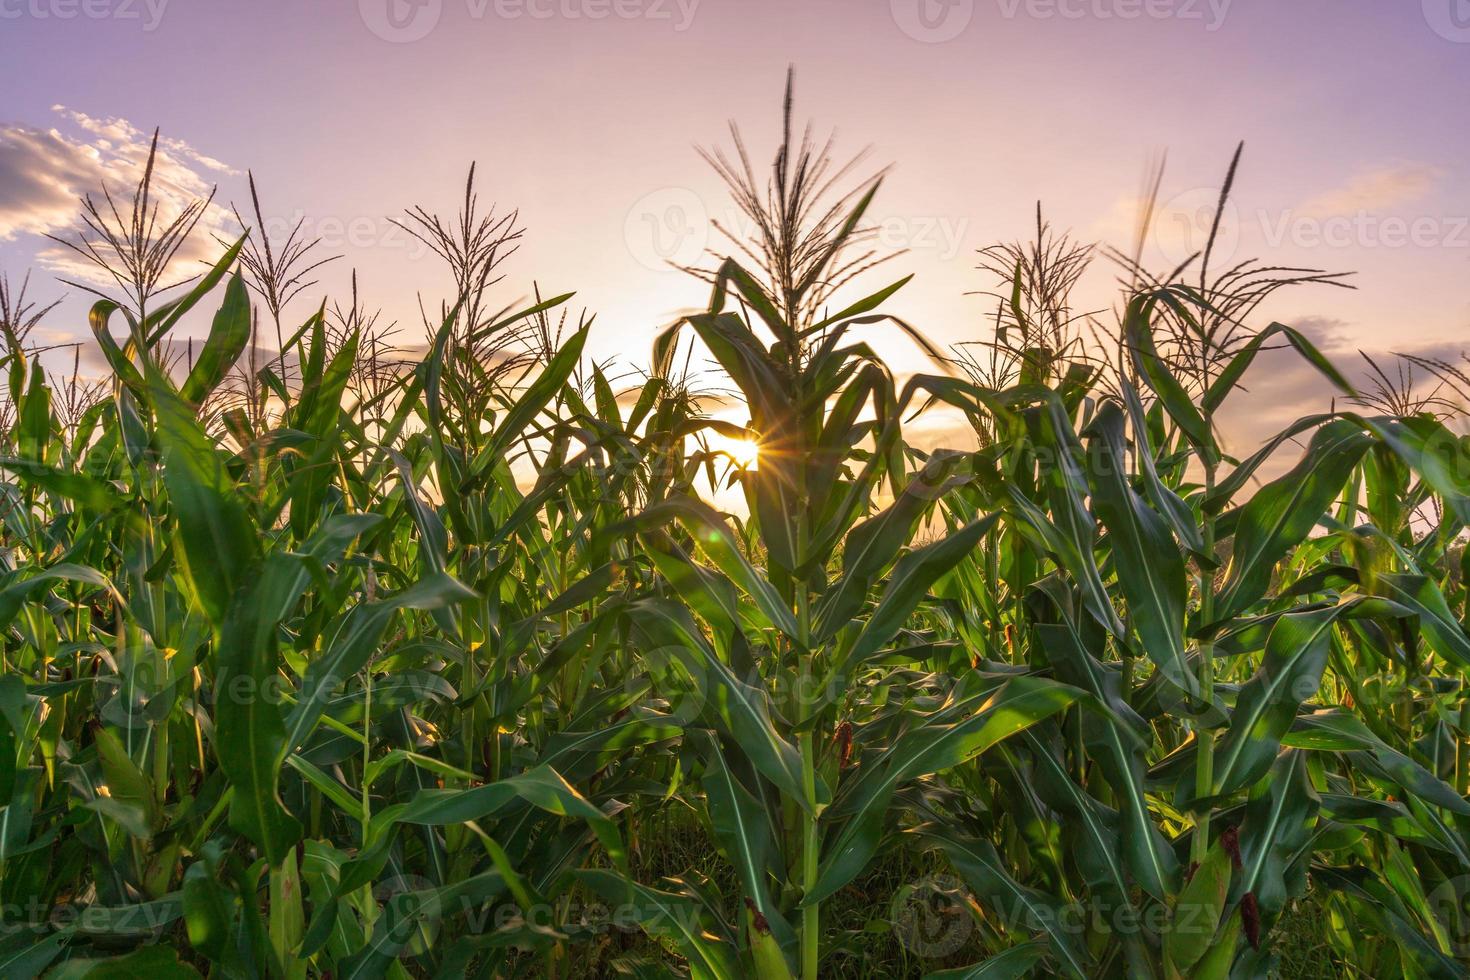 belle vue matinale de l'indonésie. photo d'une rizière champ de maïs au lever du soleil